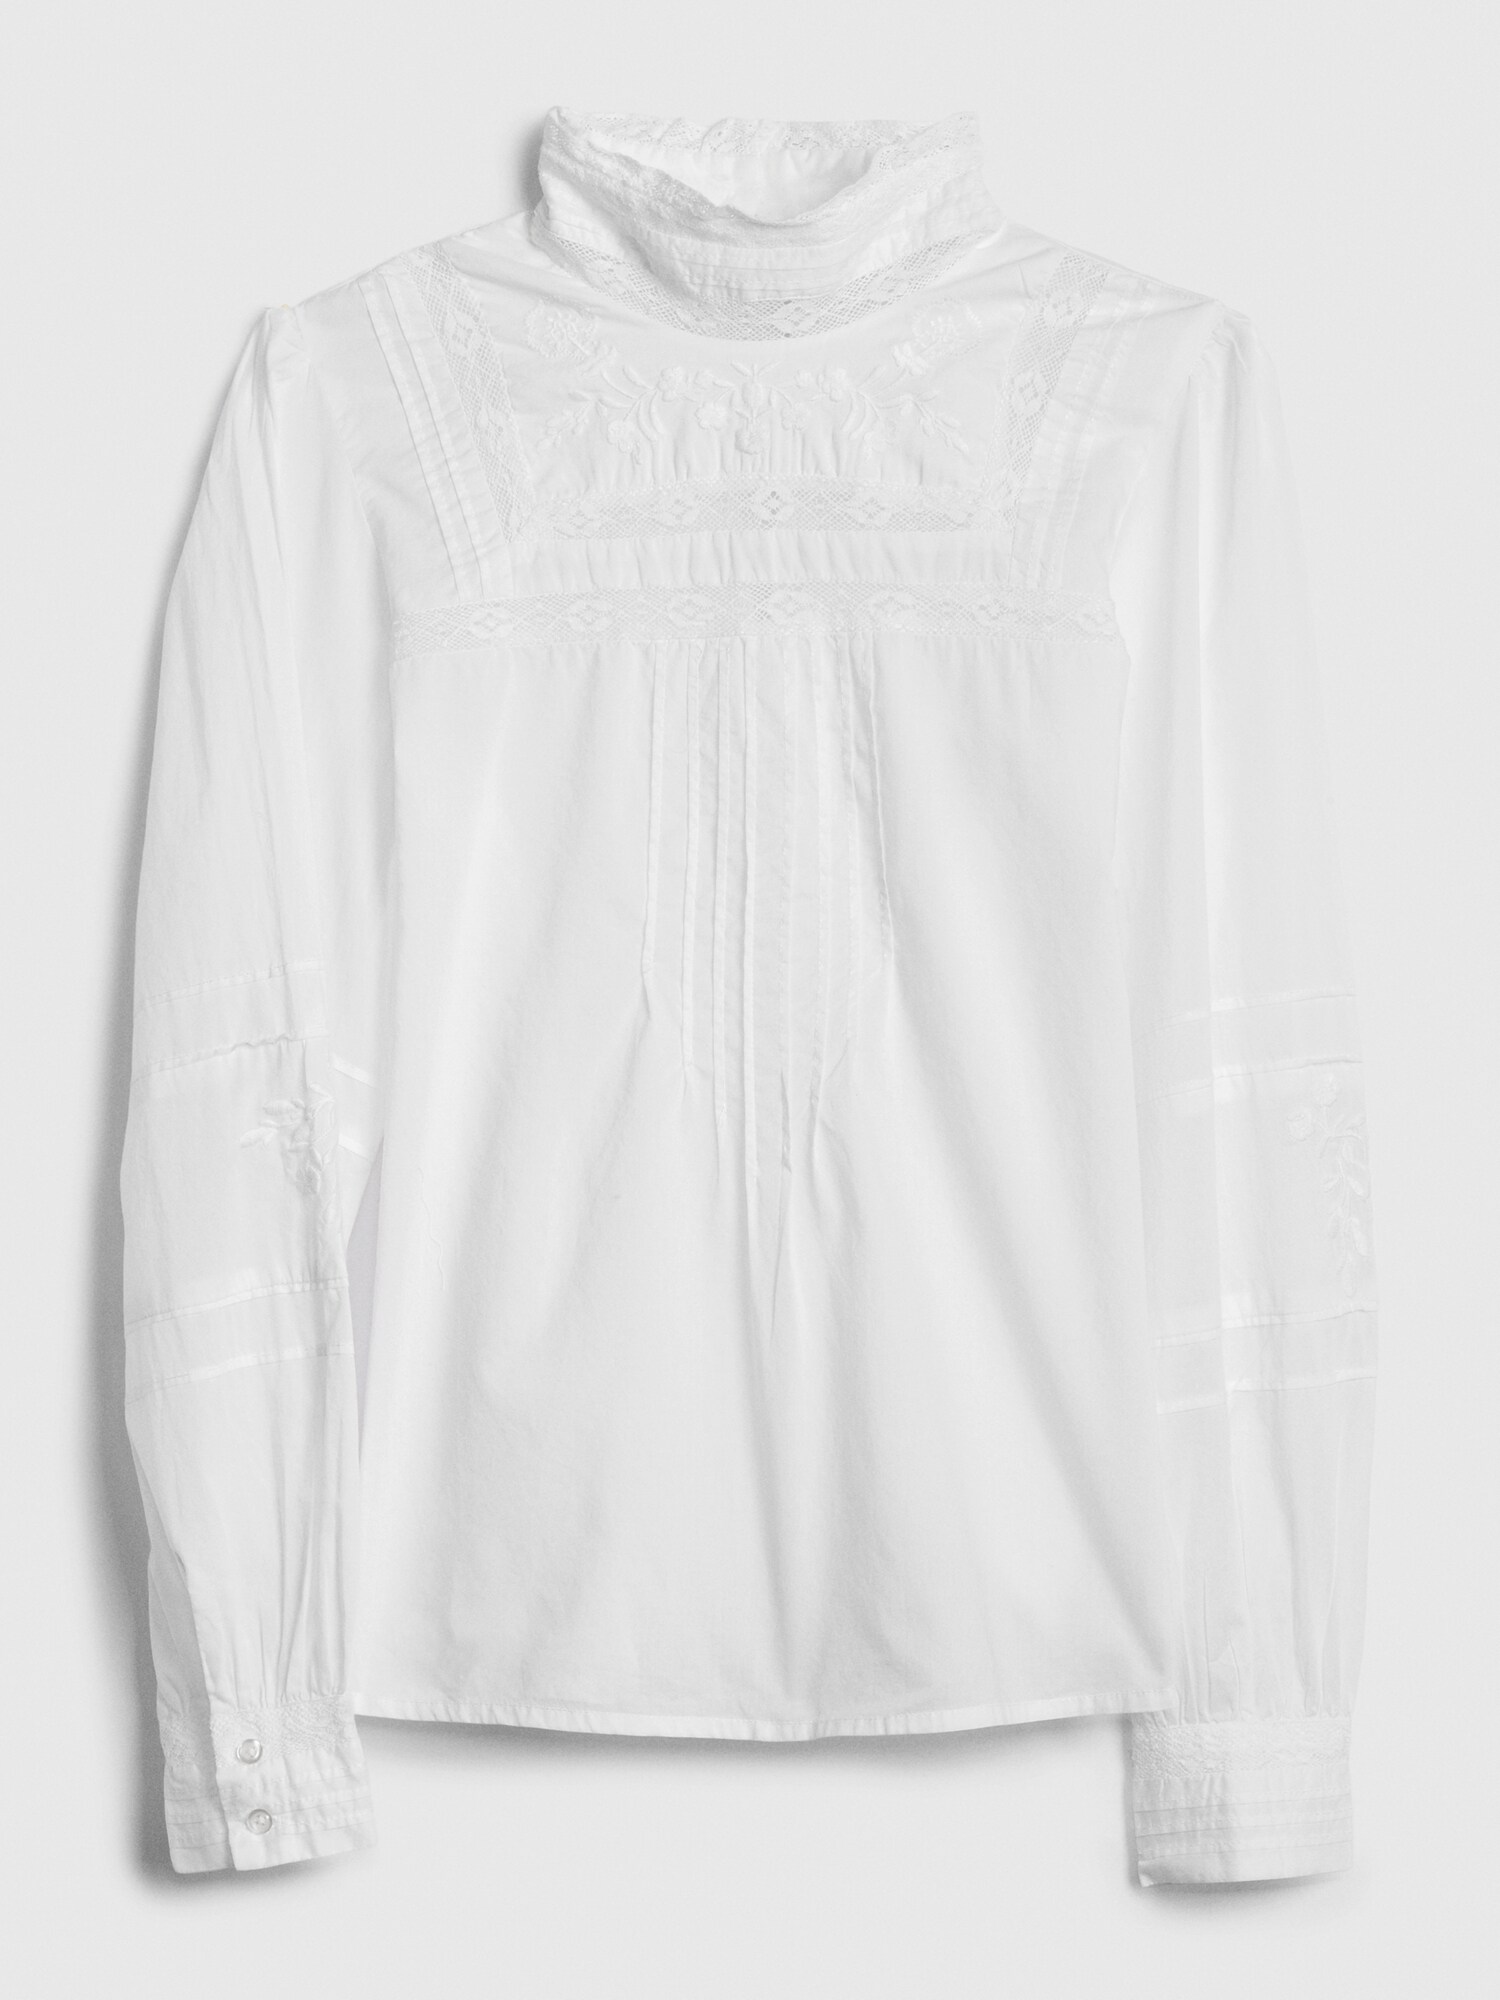 gap white blouse